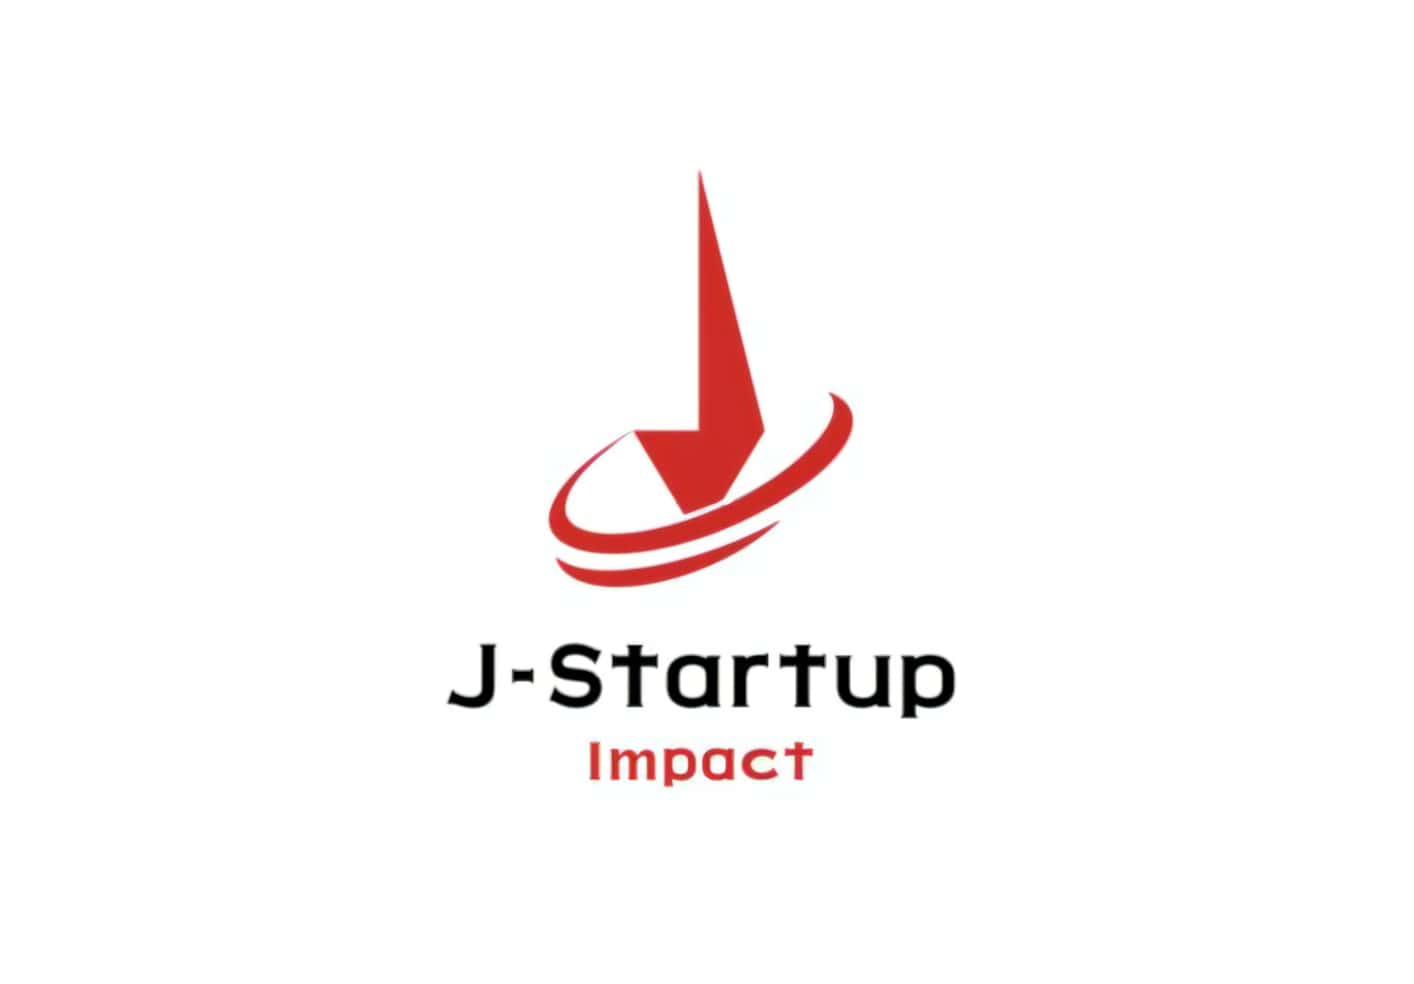 経済産業省がインパクトスタートアップ育成支援プログラム「J-Startup Impact」を新設─ロールモデルとして30社を選定